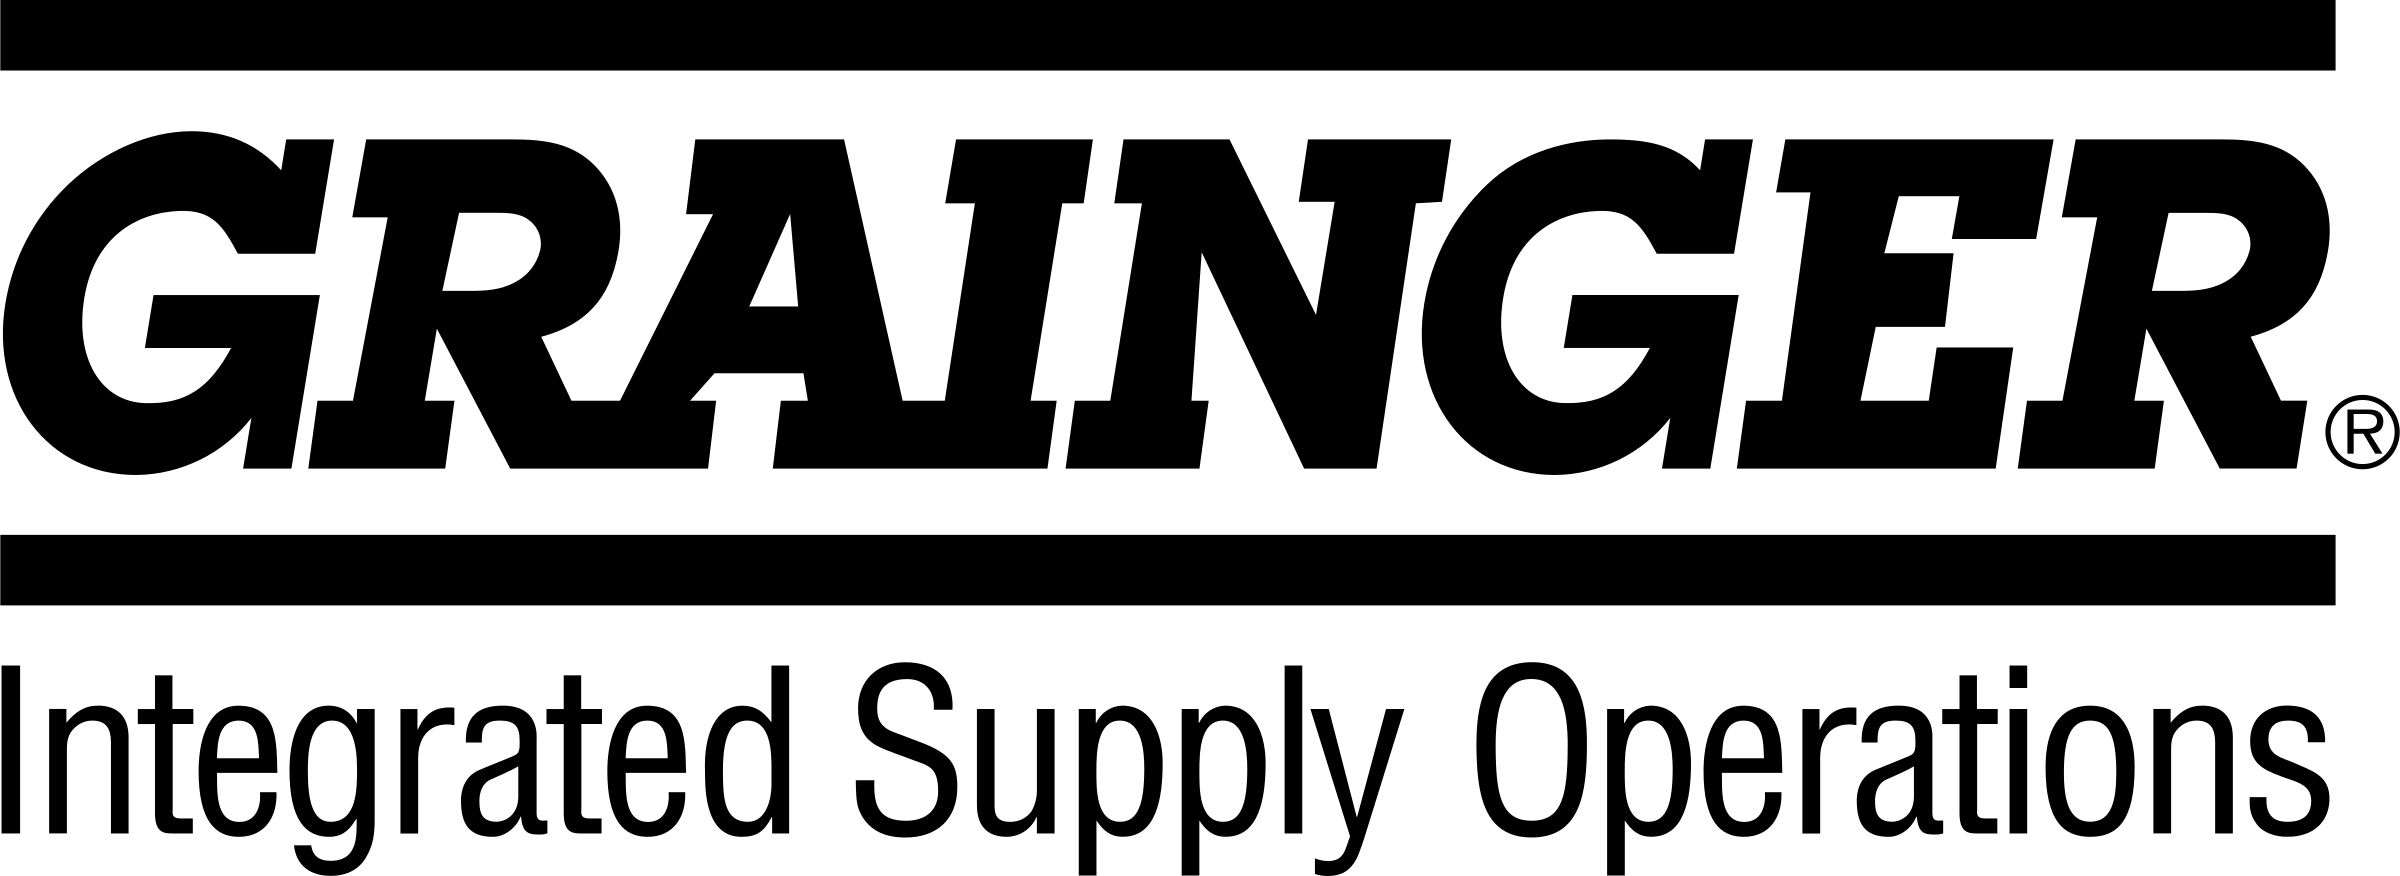 Grainger Logo - Grainger 2 Logo PNG Transparent & SVG Vector - Freebie Supply